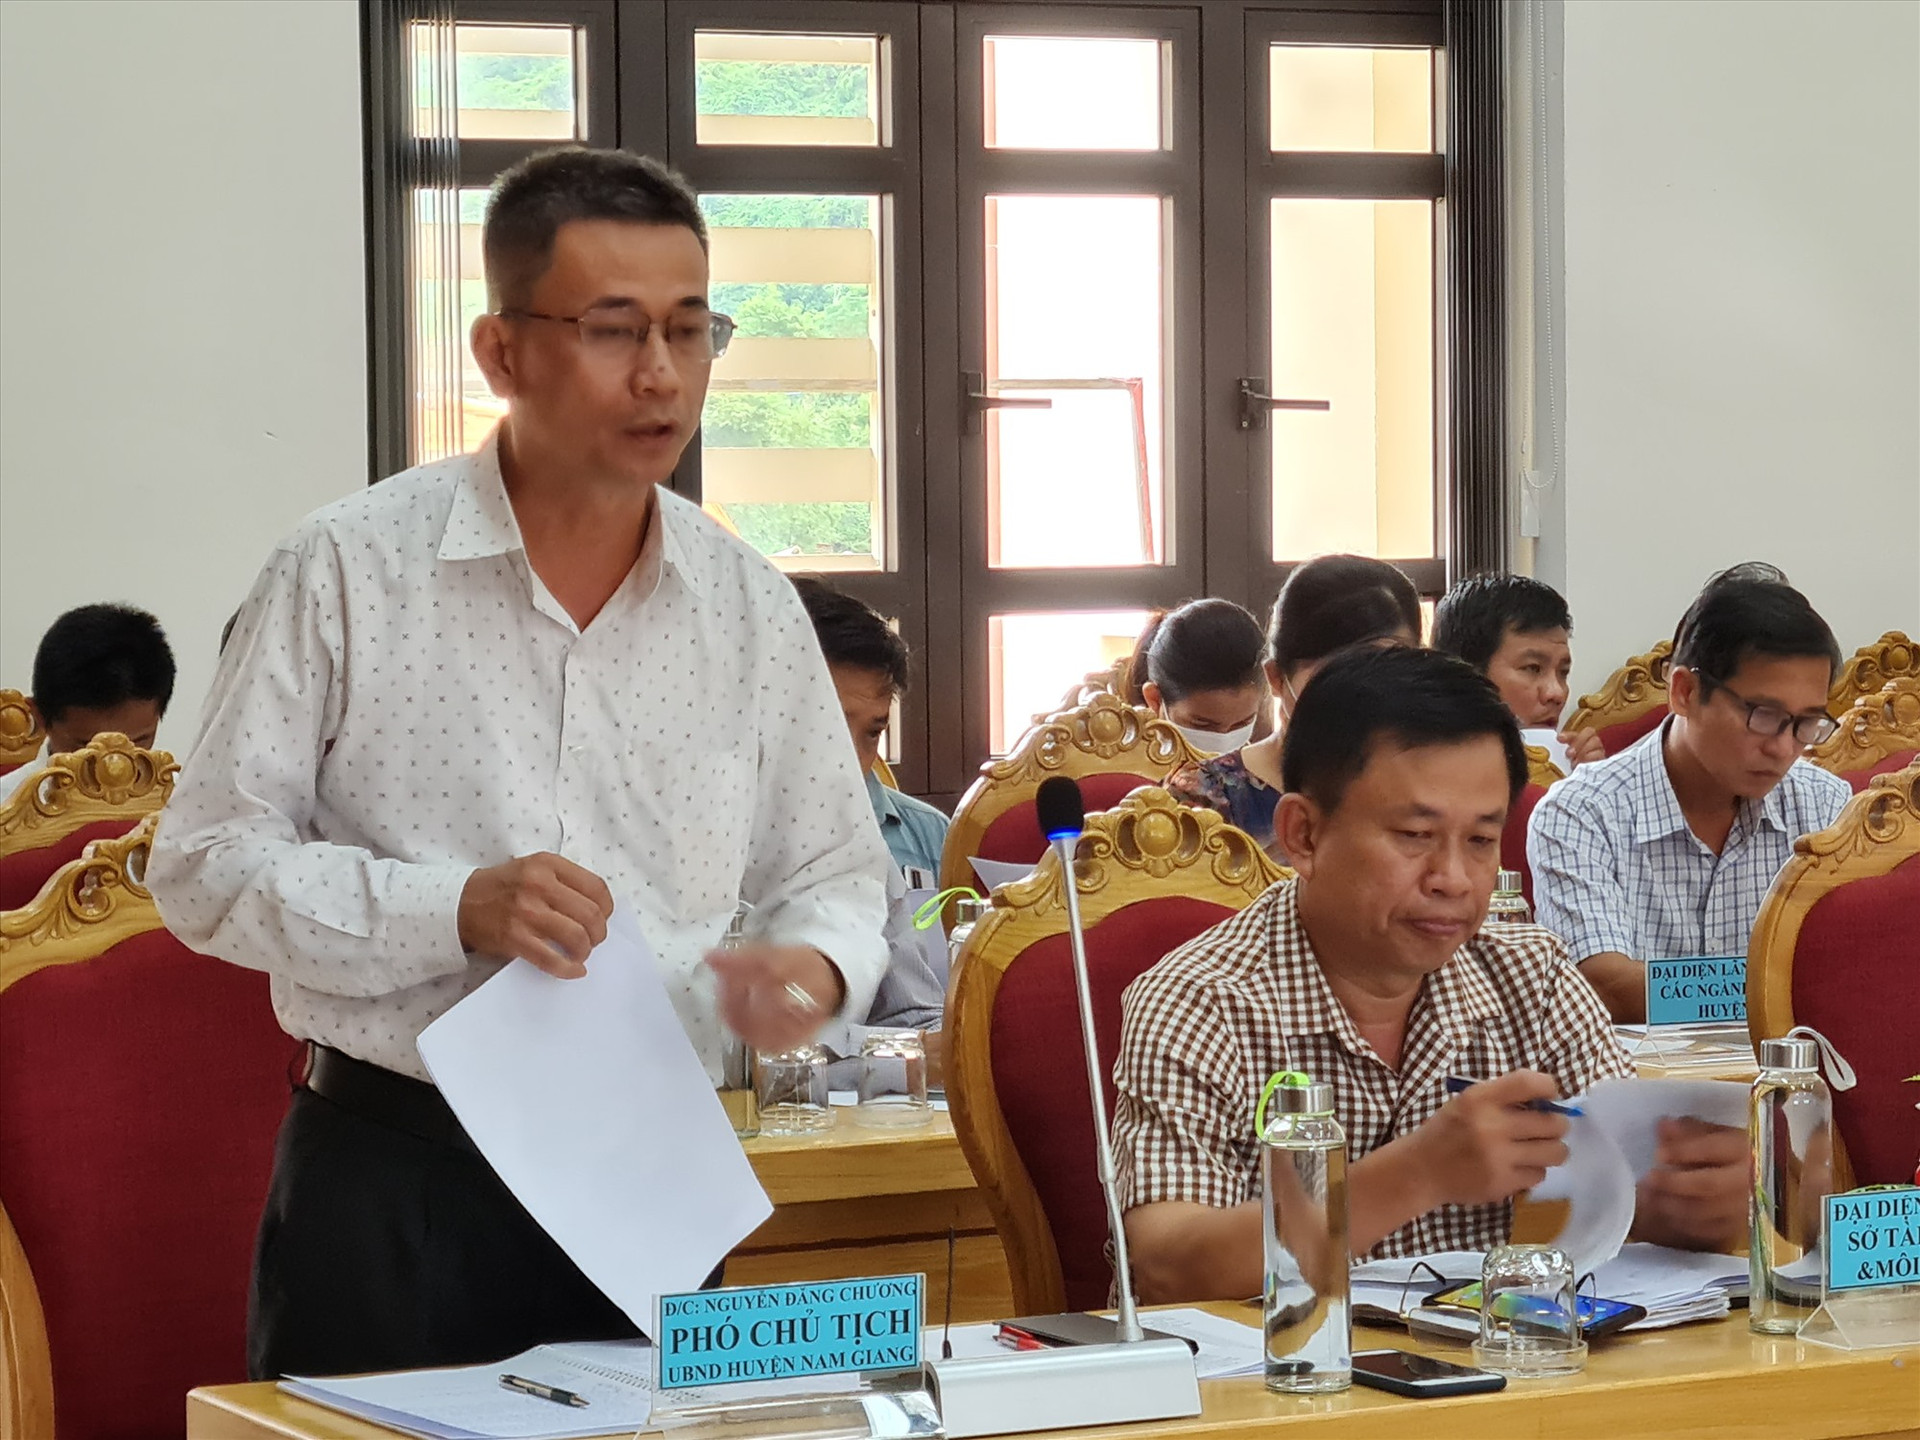 Đại diện UBND huyện Nam Giang báo cáo tiến độ thực hiện các chương trình mục tiêu quốc gia năm 2022. Ảnh: D.L